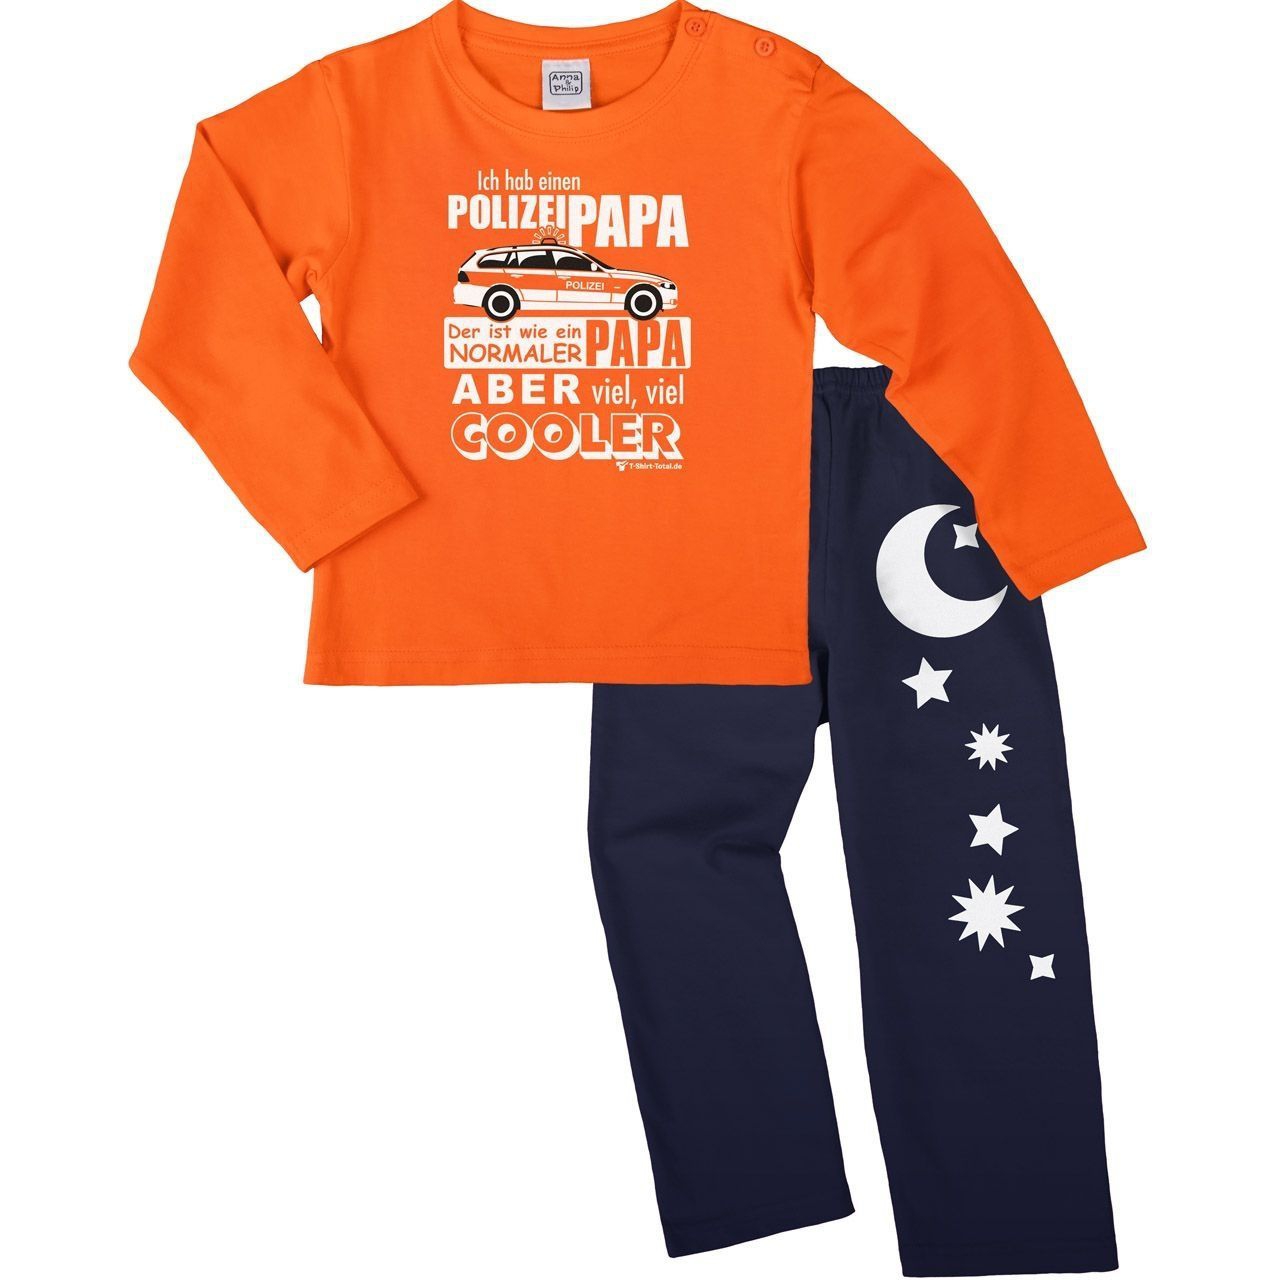 Polizei Papa Pyjama Set orange / navy 110 / 116